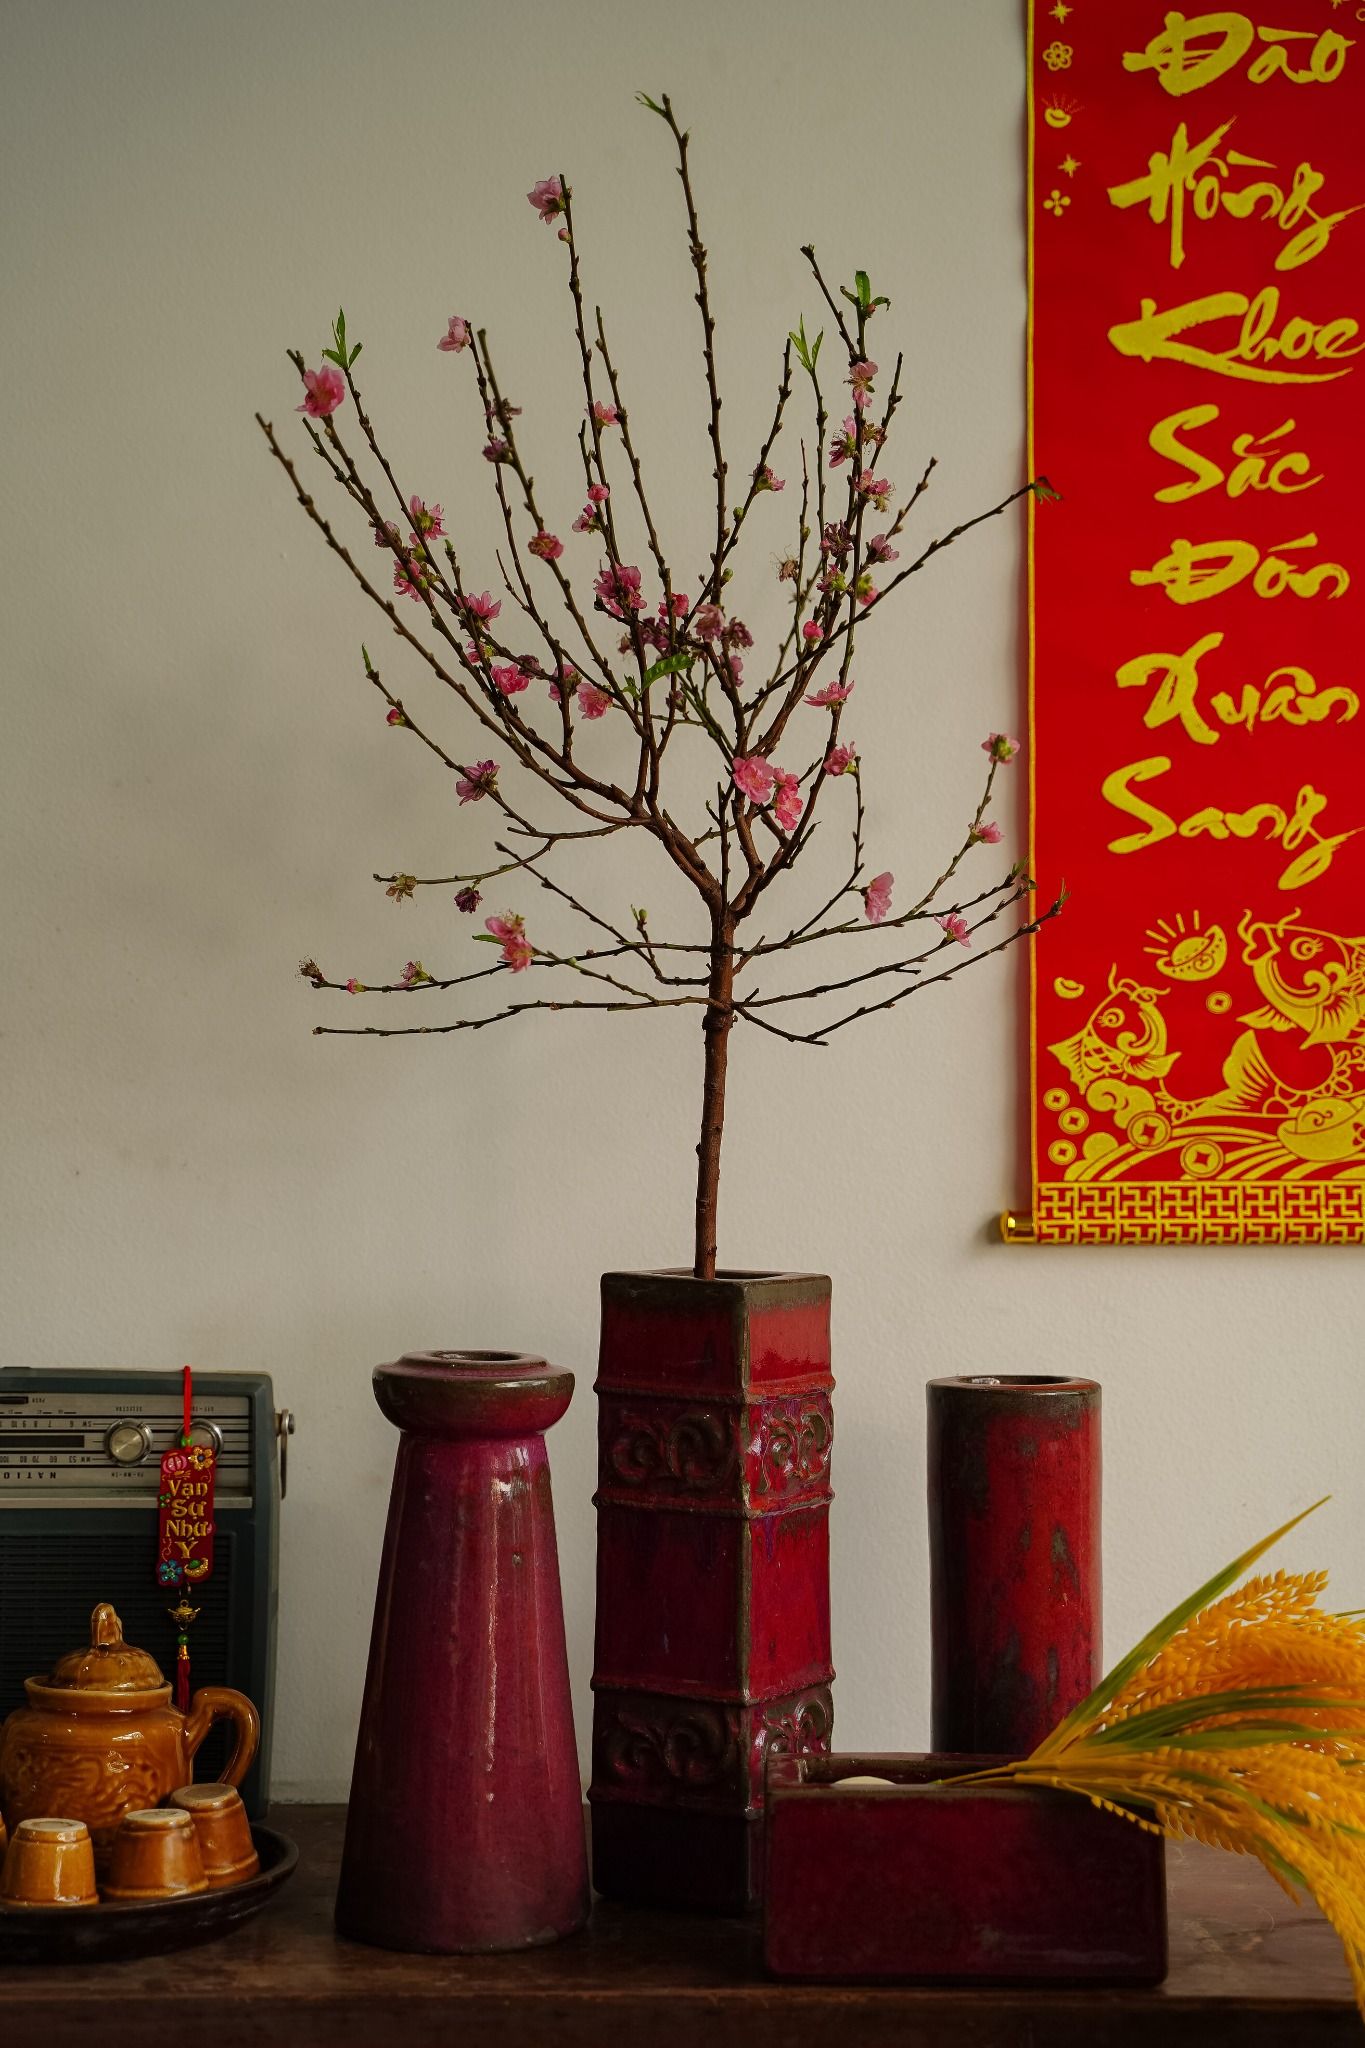  Bình ống cao men đỏ mận cổ nhỏ cắm Tuyết Mai, bình cắm hoa gốm Nam Bộ, R8 x C42cm 